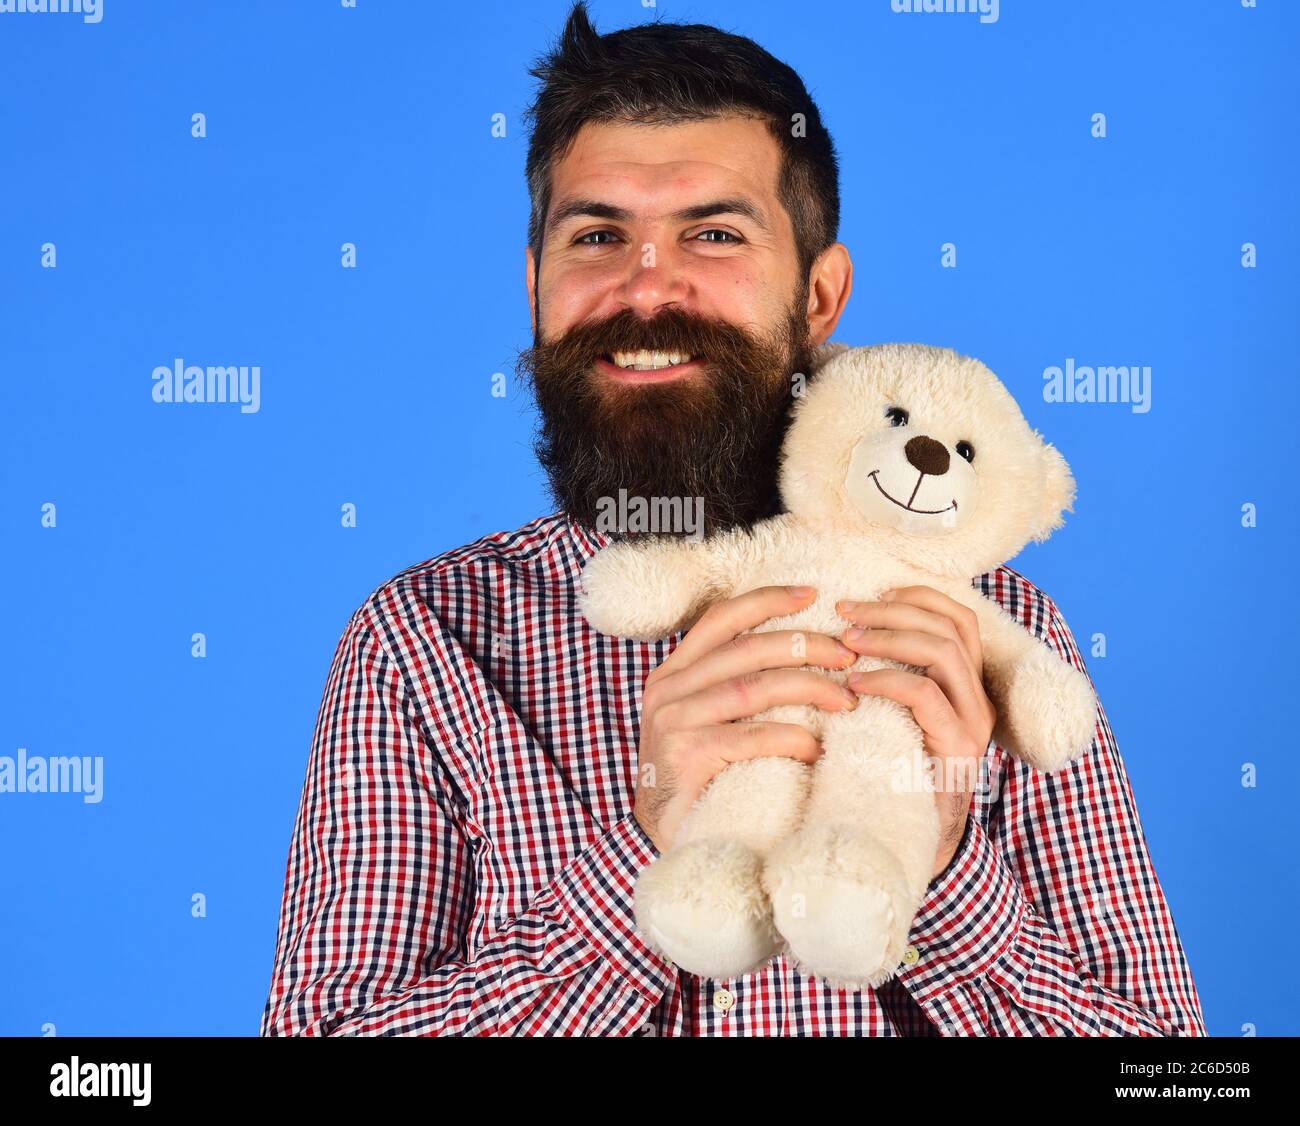 teddy bear with a beard